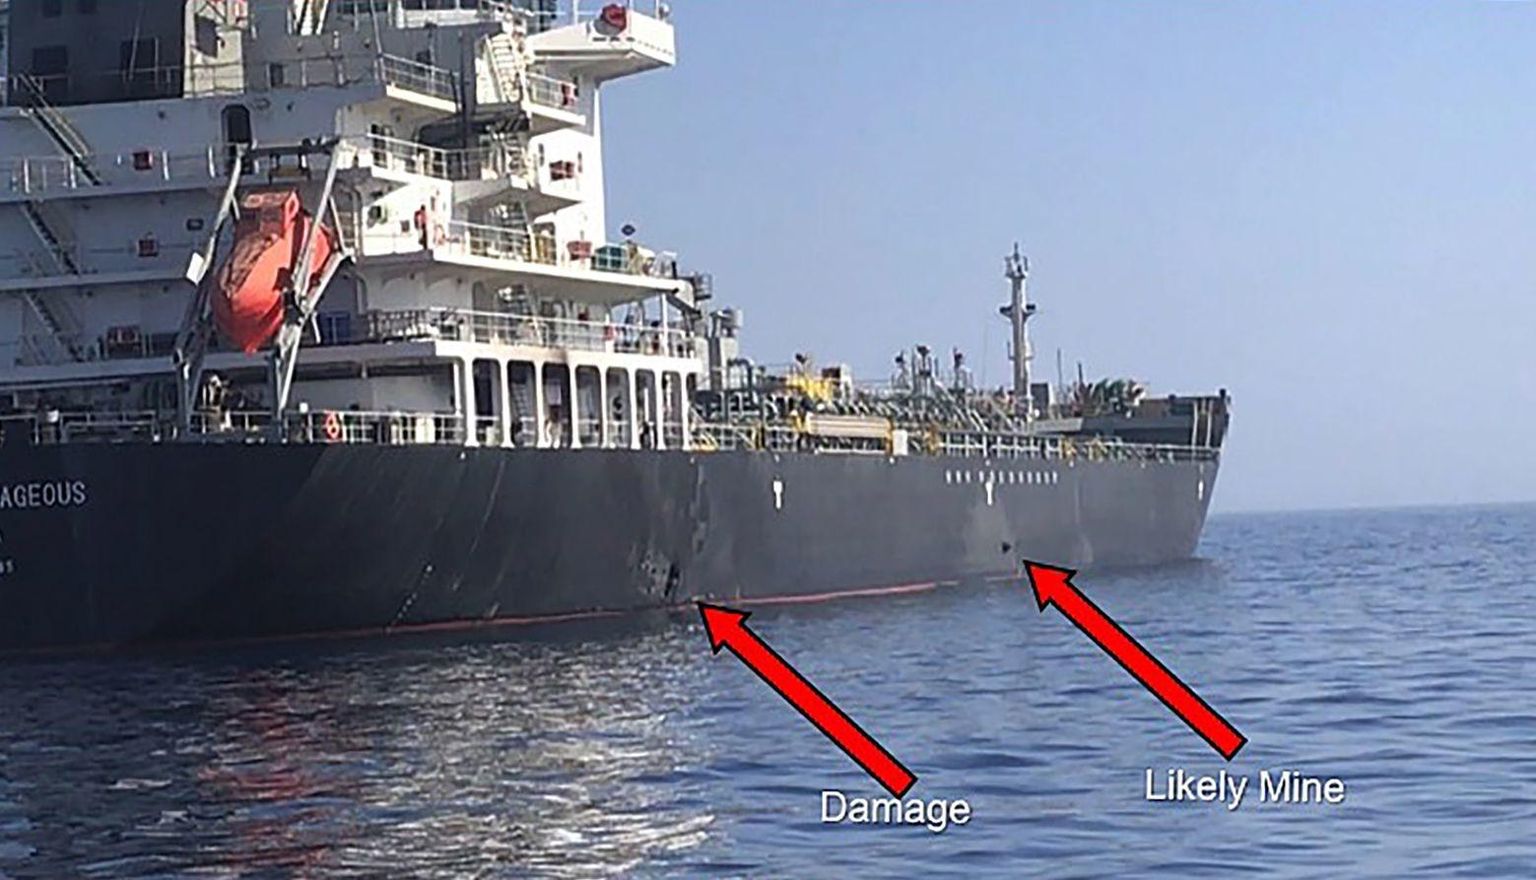 Ameerika Ühendriikide sõjaväe avaldatud pildil on väidetavalt näha plahvatusest tekkinud purustus laeva kerel (vasakul) ja arvatav lõhkemata jäänud miin (paremal).